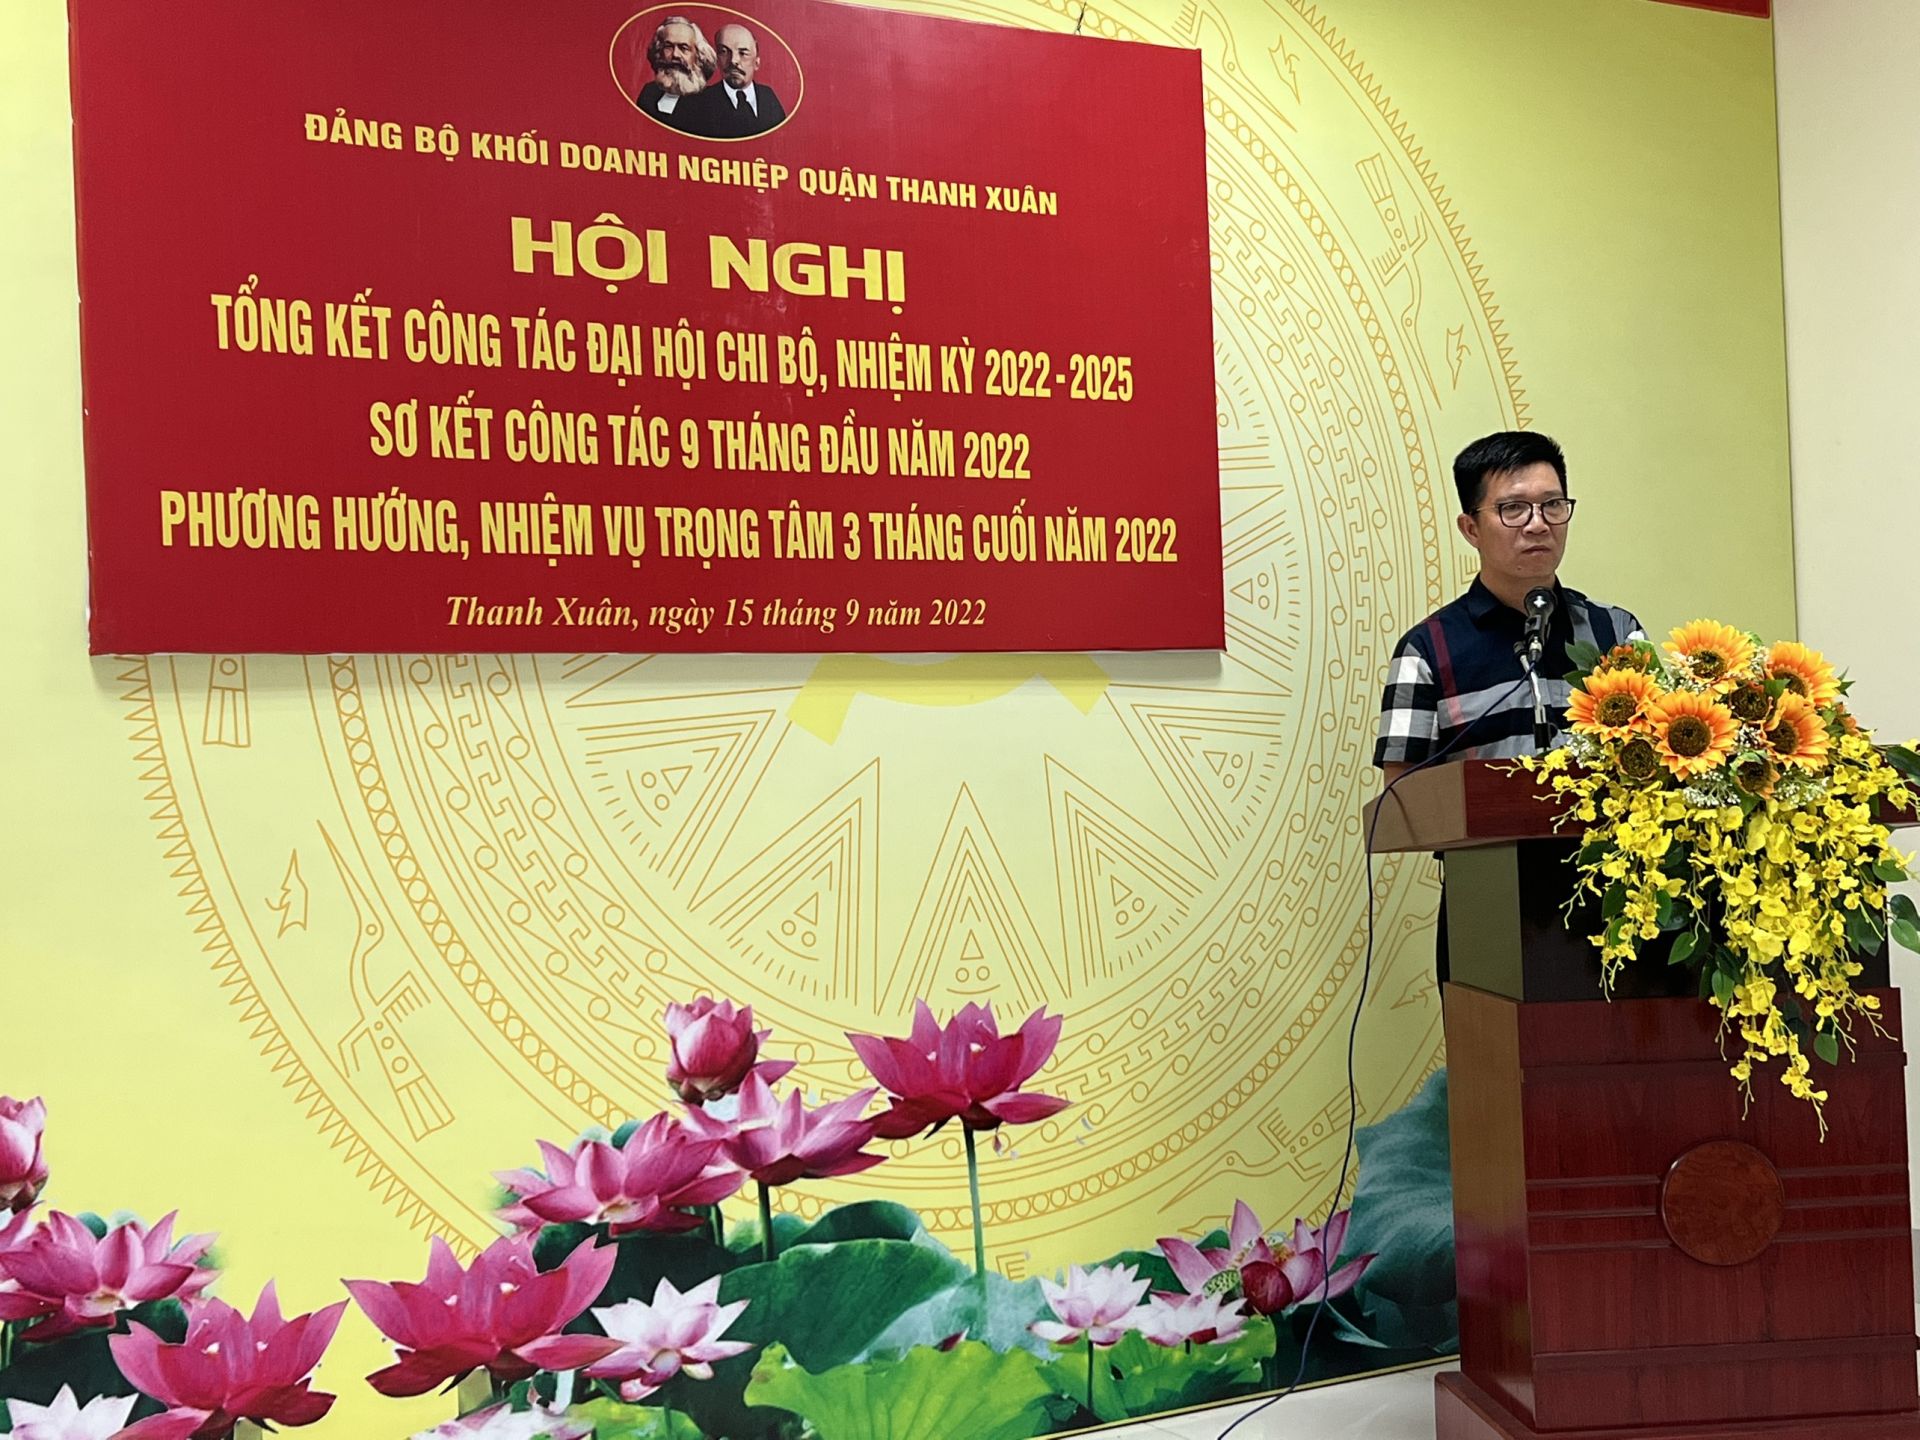 Đồng chí Nguyễn Văn Minh - Quận ủy viên - Bí thư Đảng ủy Khối Doanh nghiệp quận Thanh Xuân phát biểu tại Hội nghị